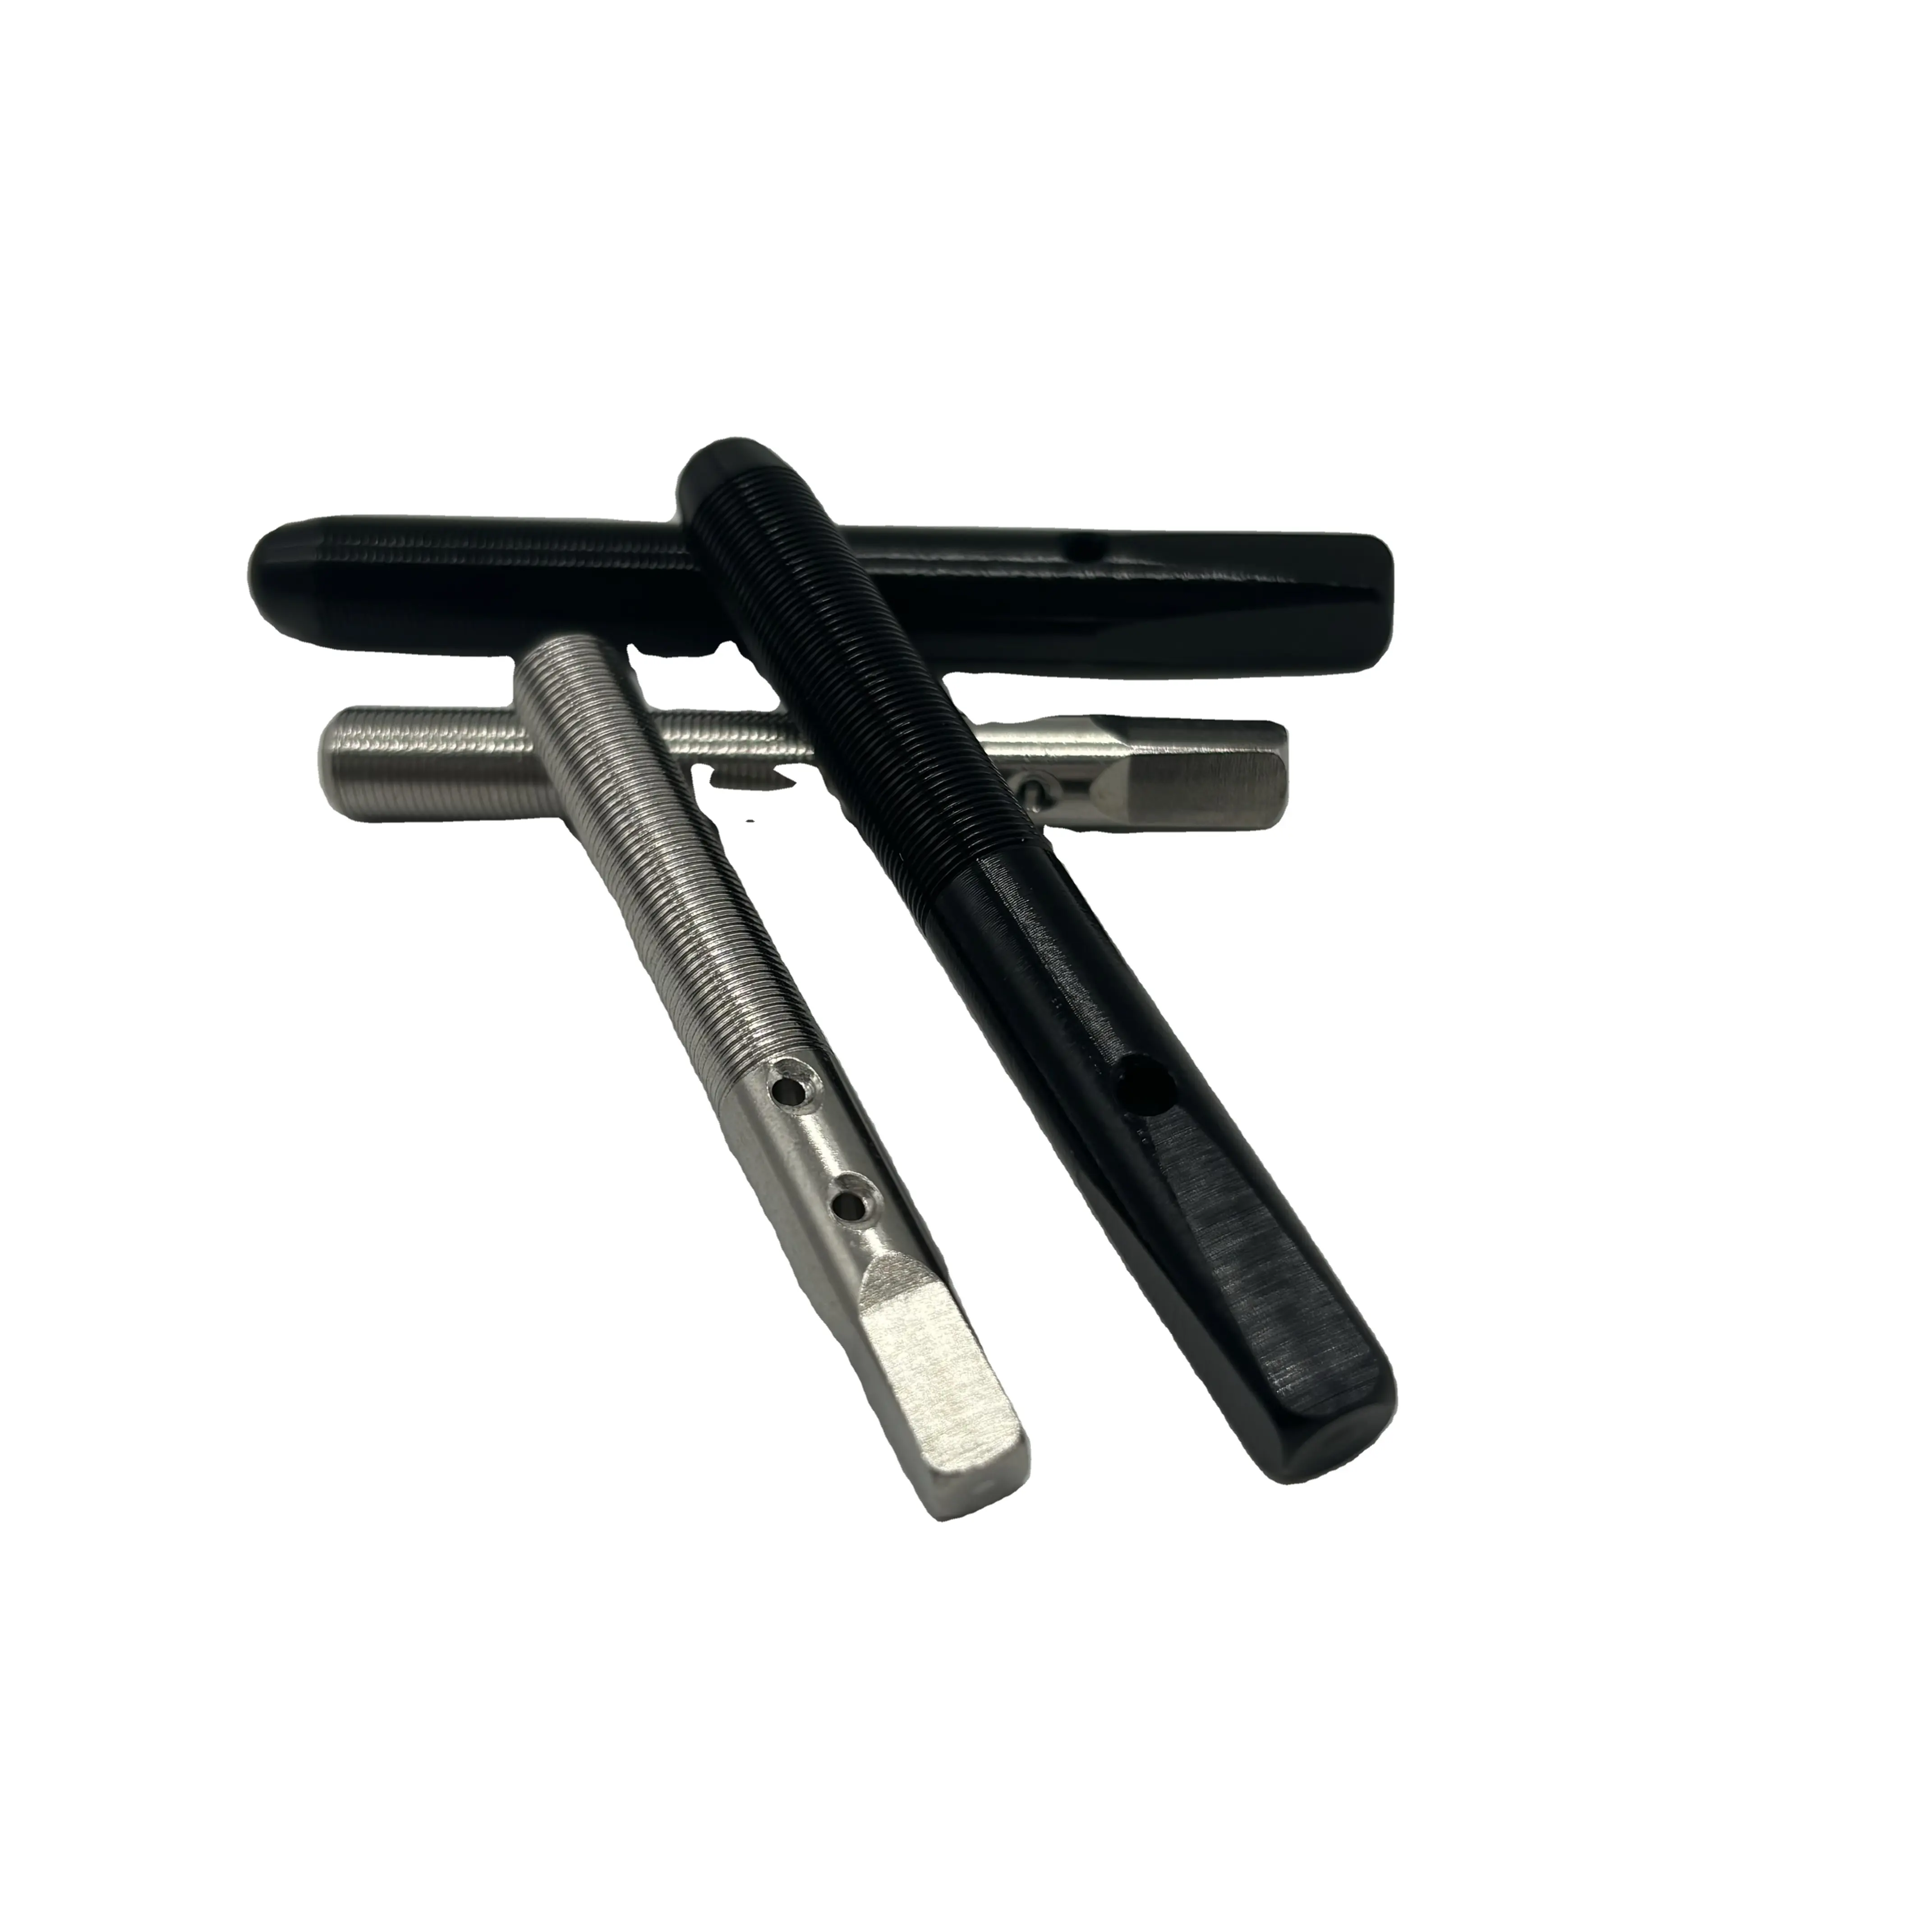 OEM-Fabrik individualisierter Edelstahl-Tuning-Stift für Klavier und Musikinstrumente